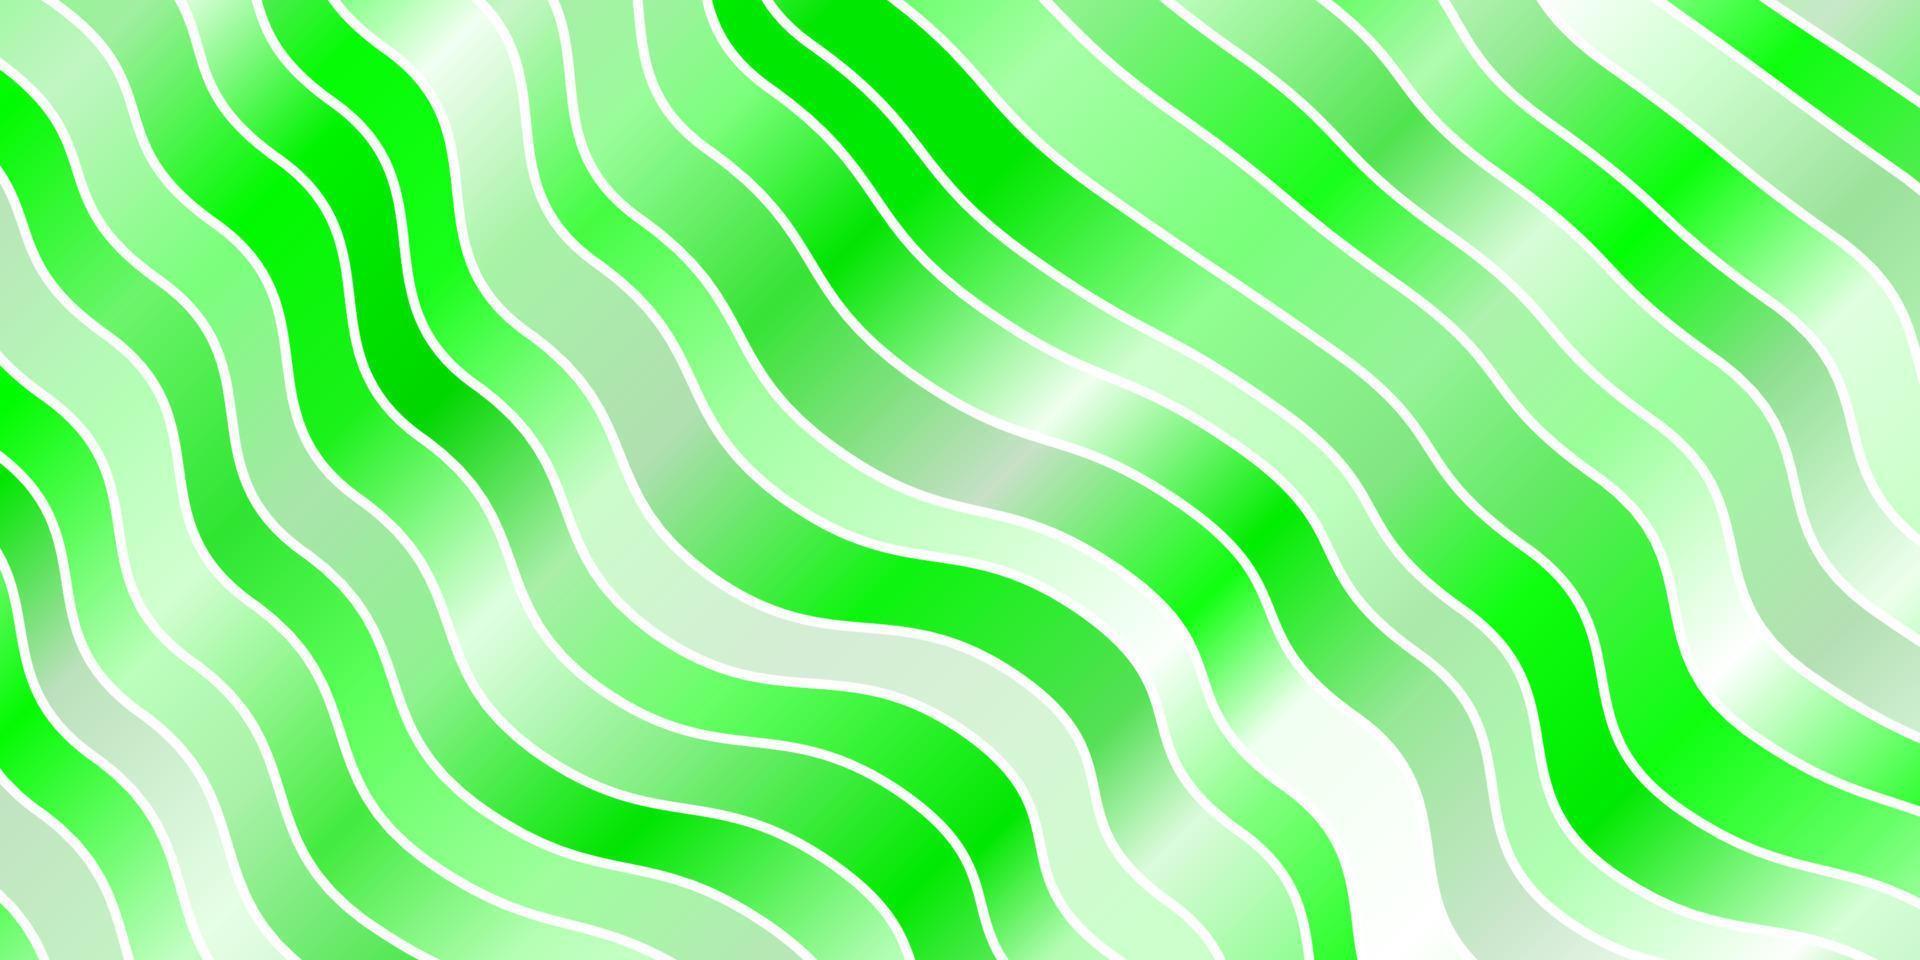 sfondo vettoriale verde chiaro con arco circolare.